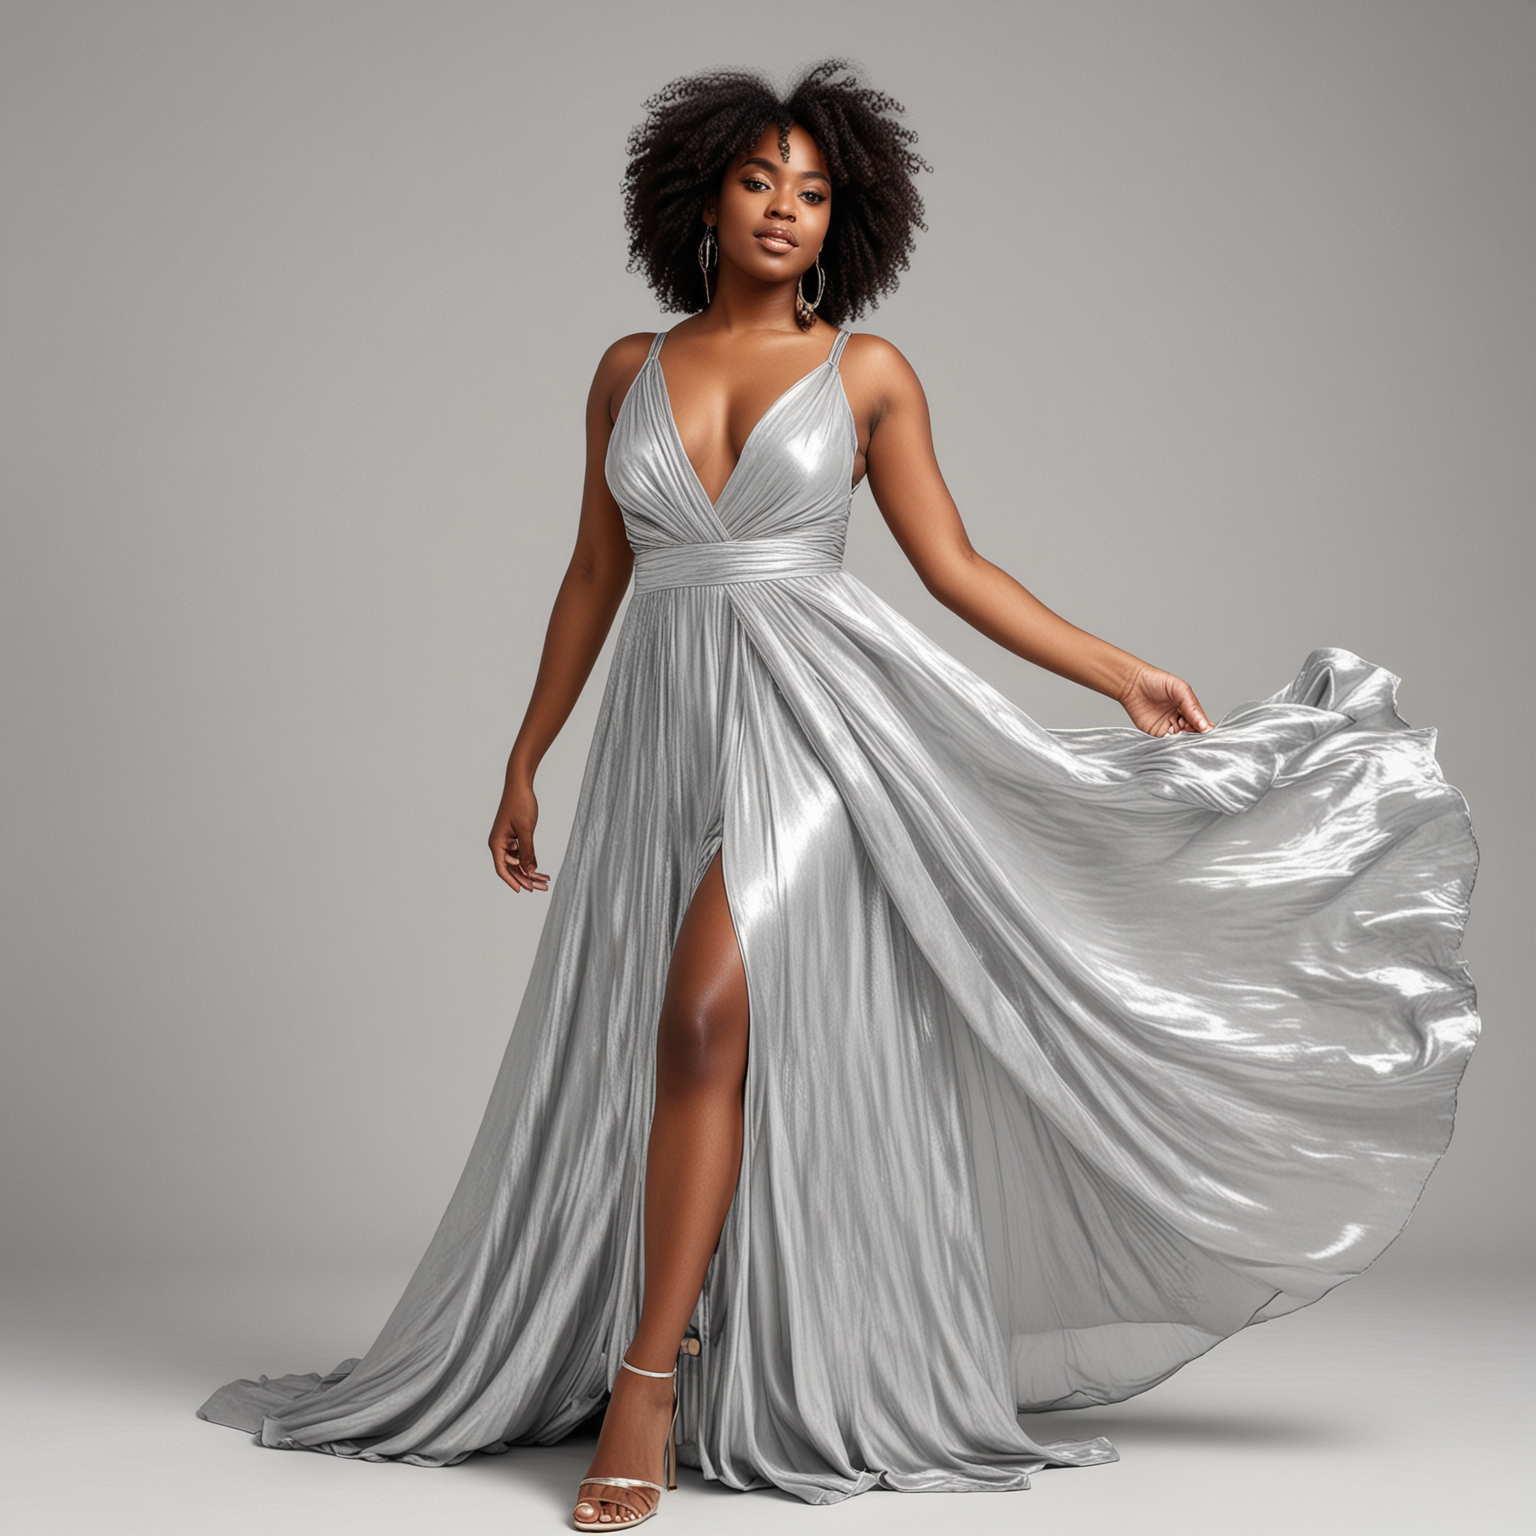 black woman in silver flowy dress